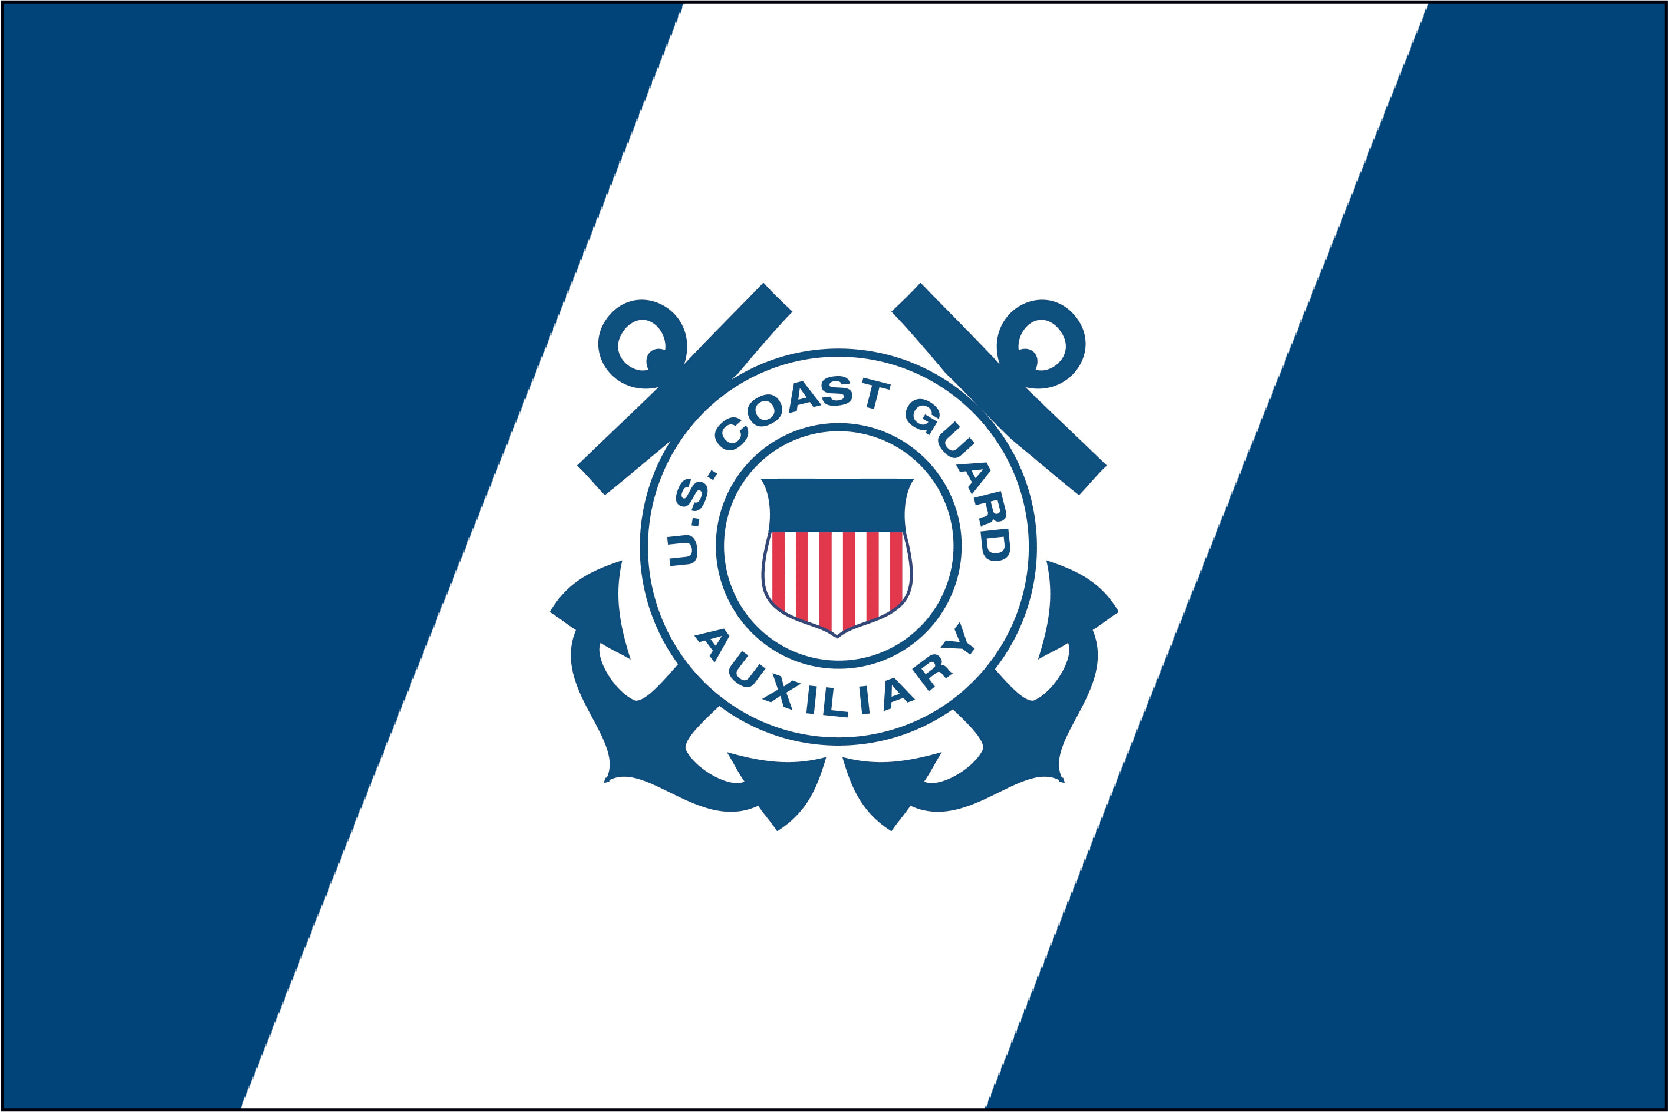 Coast Guard Auxiliary 12